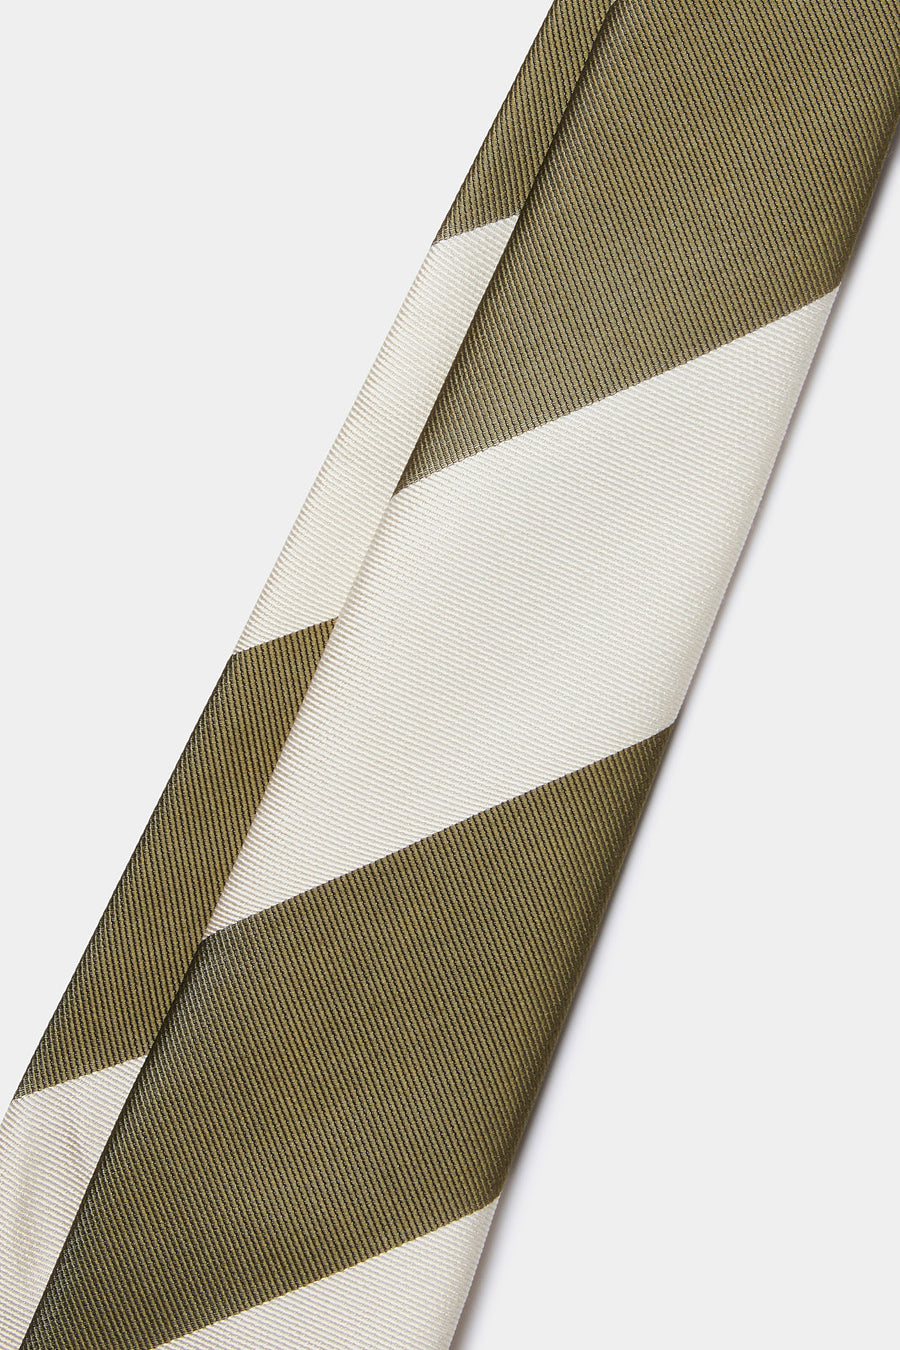 100% Silk Striped Tie in Winter Moss